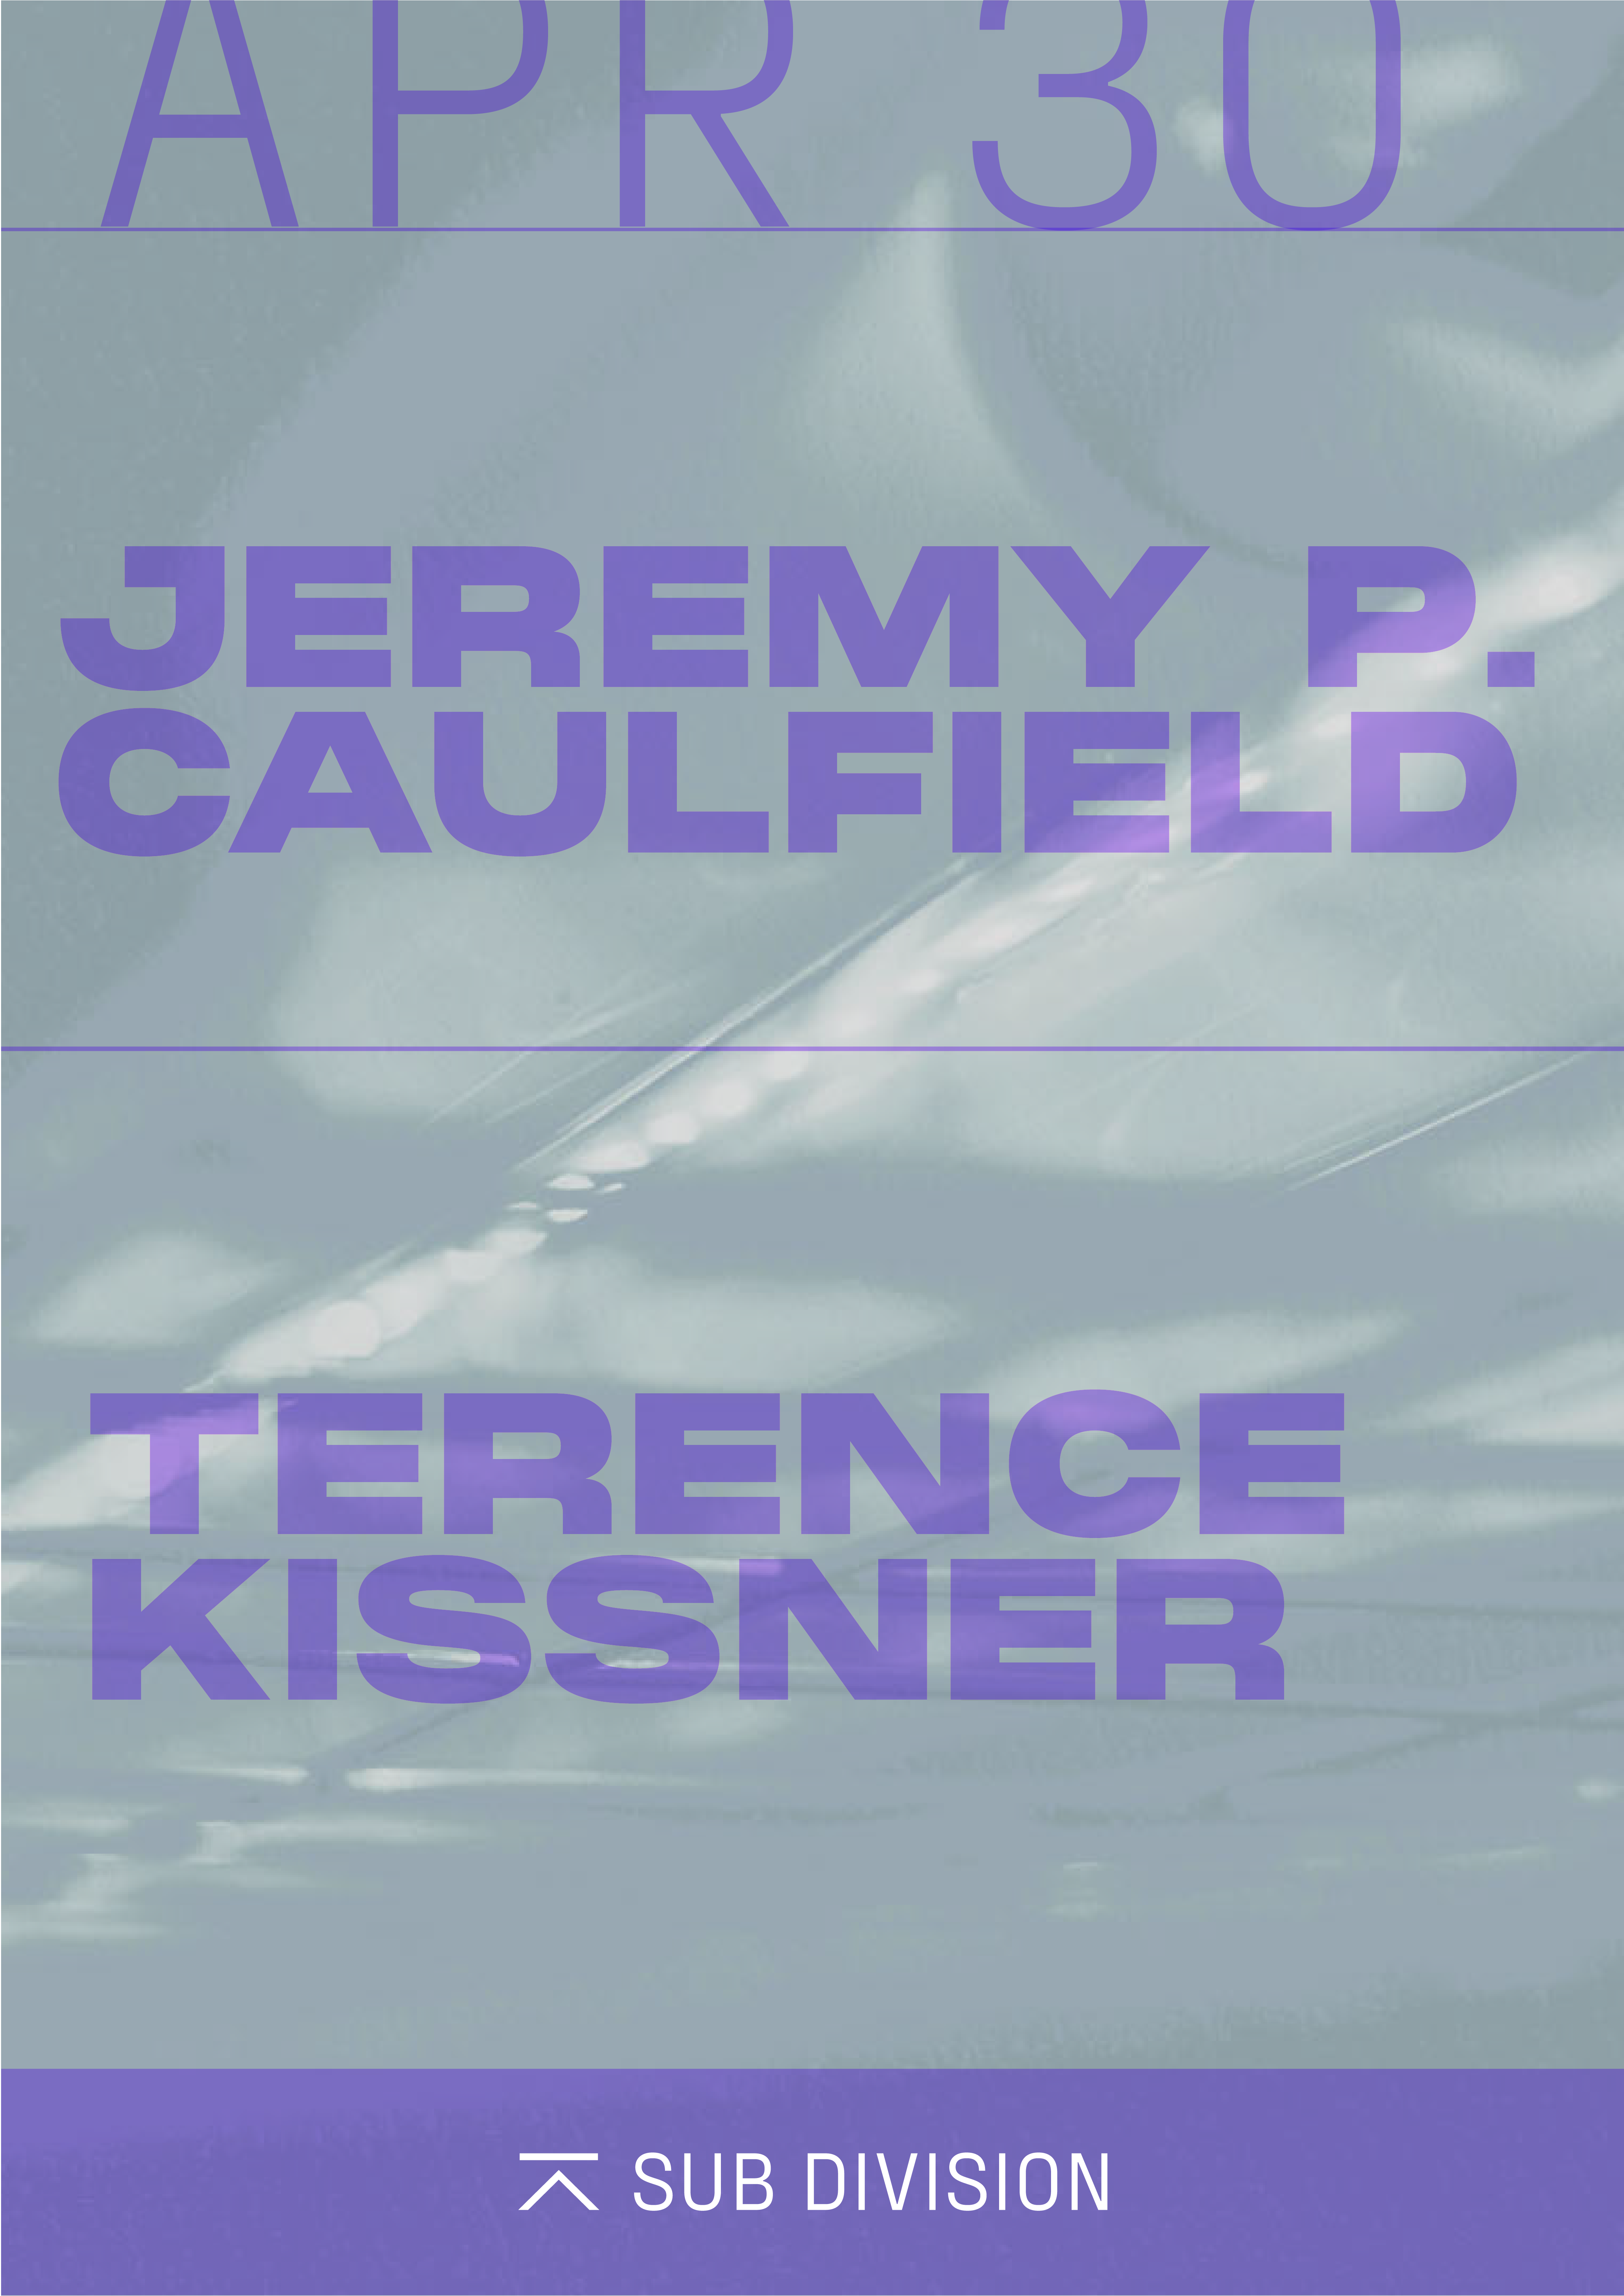 Jeremy P Caulfield + Terence Kissner - Página frontal